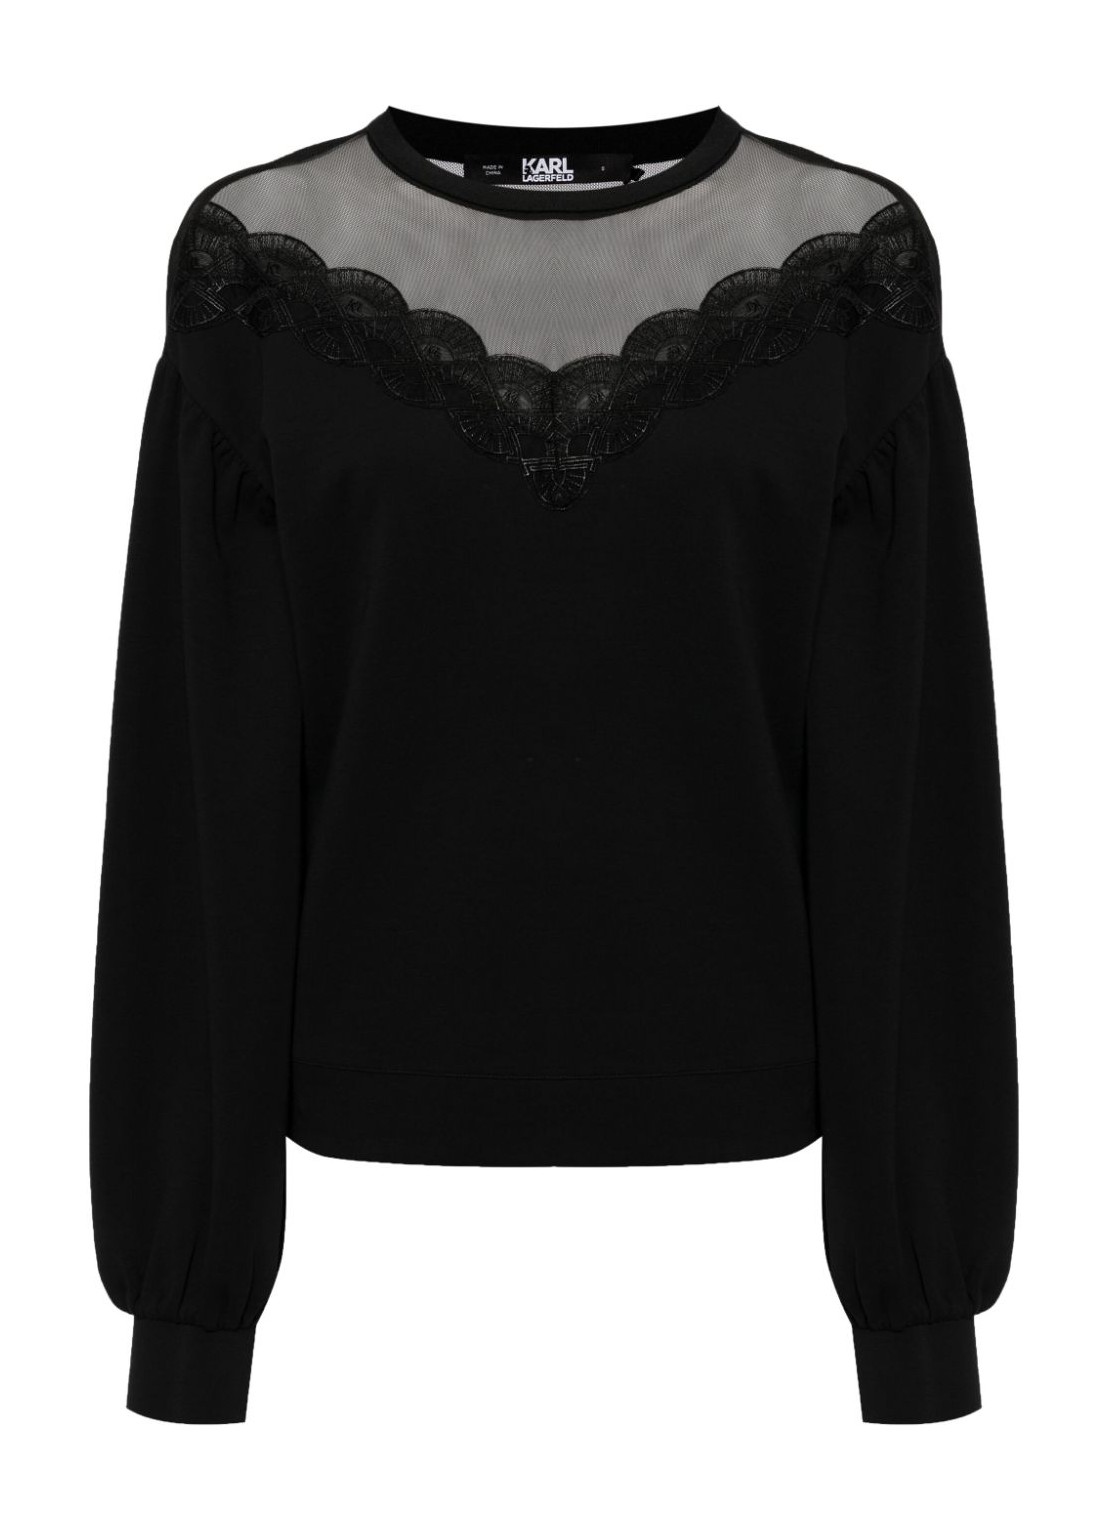 Punto karl lagerfeld knitwear woman fan lace sweatshirt 240w1821 999 talla negro
 